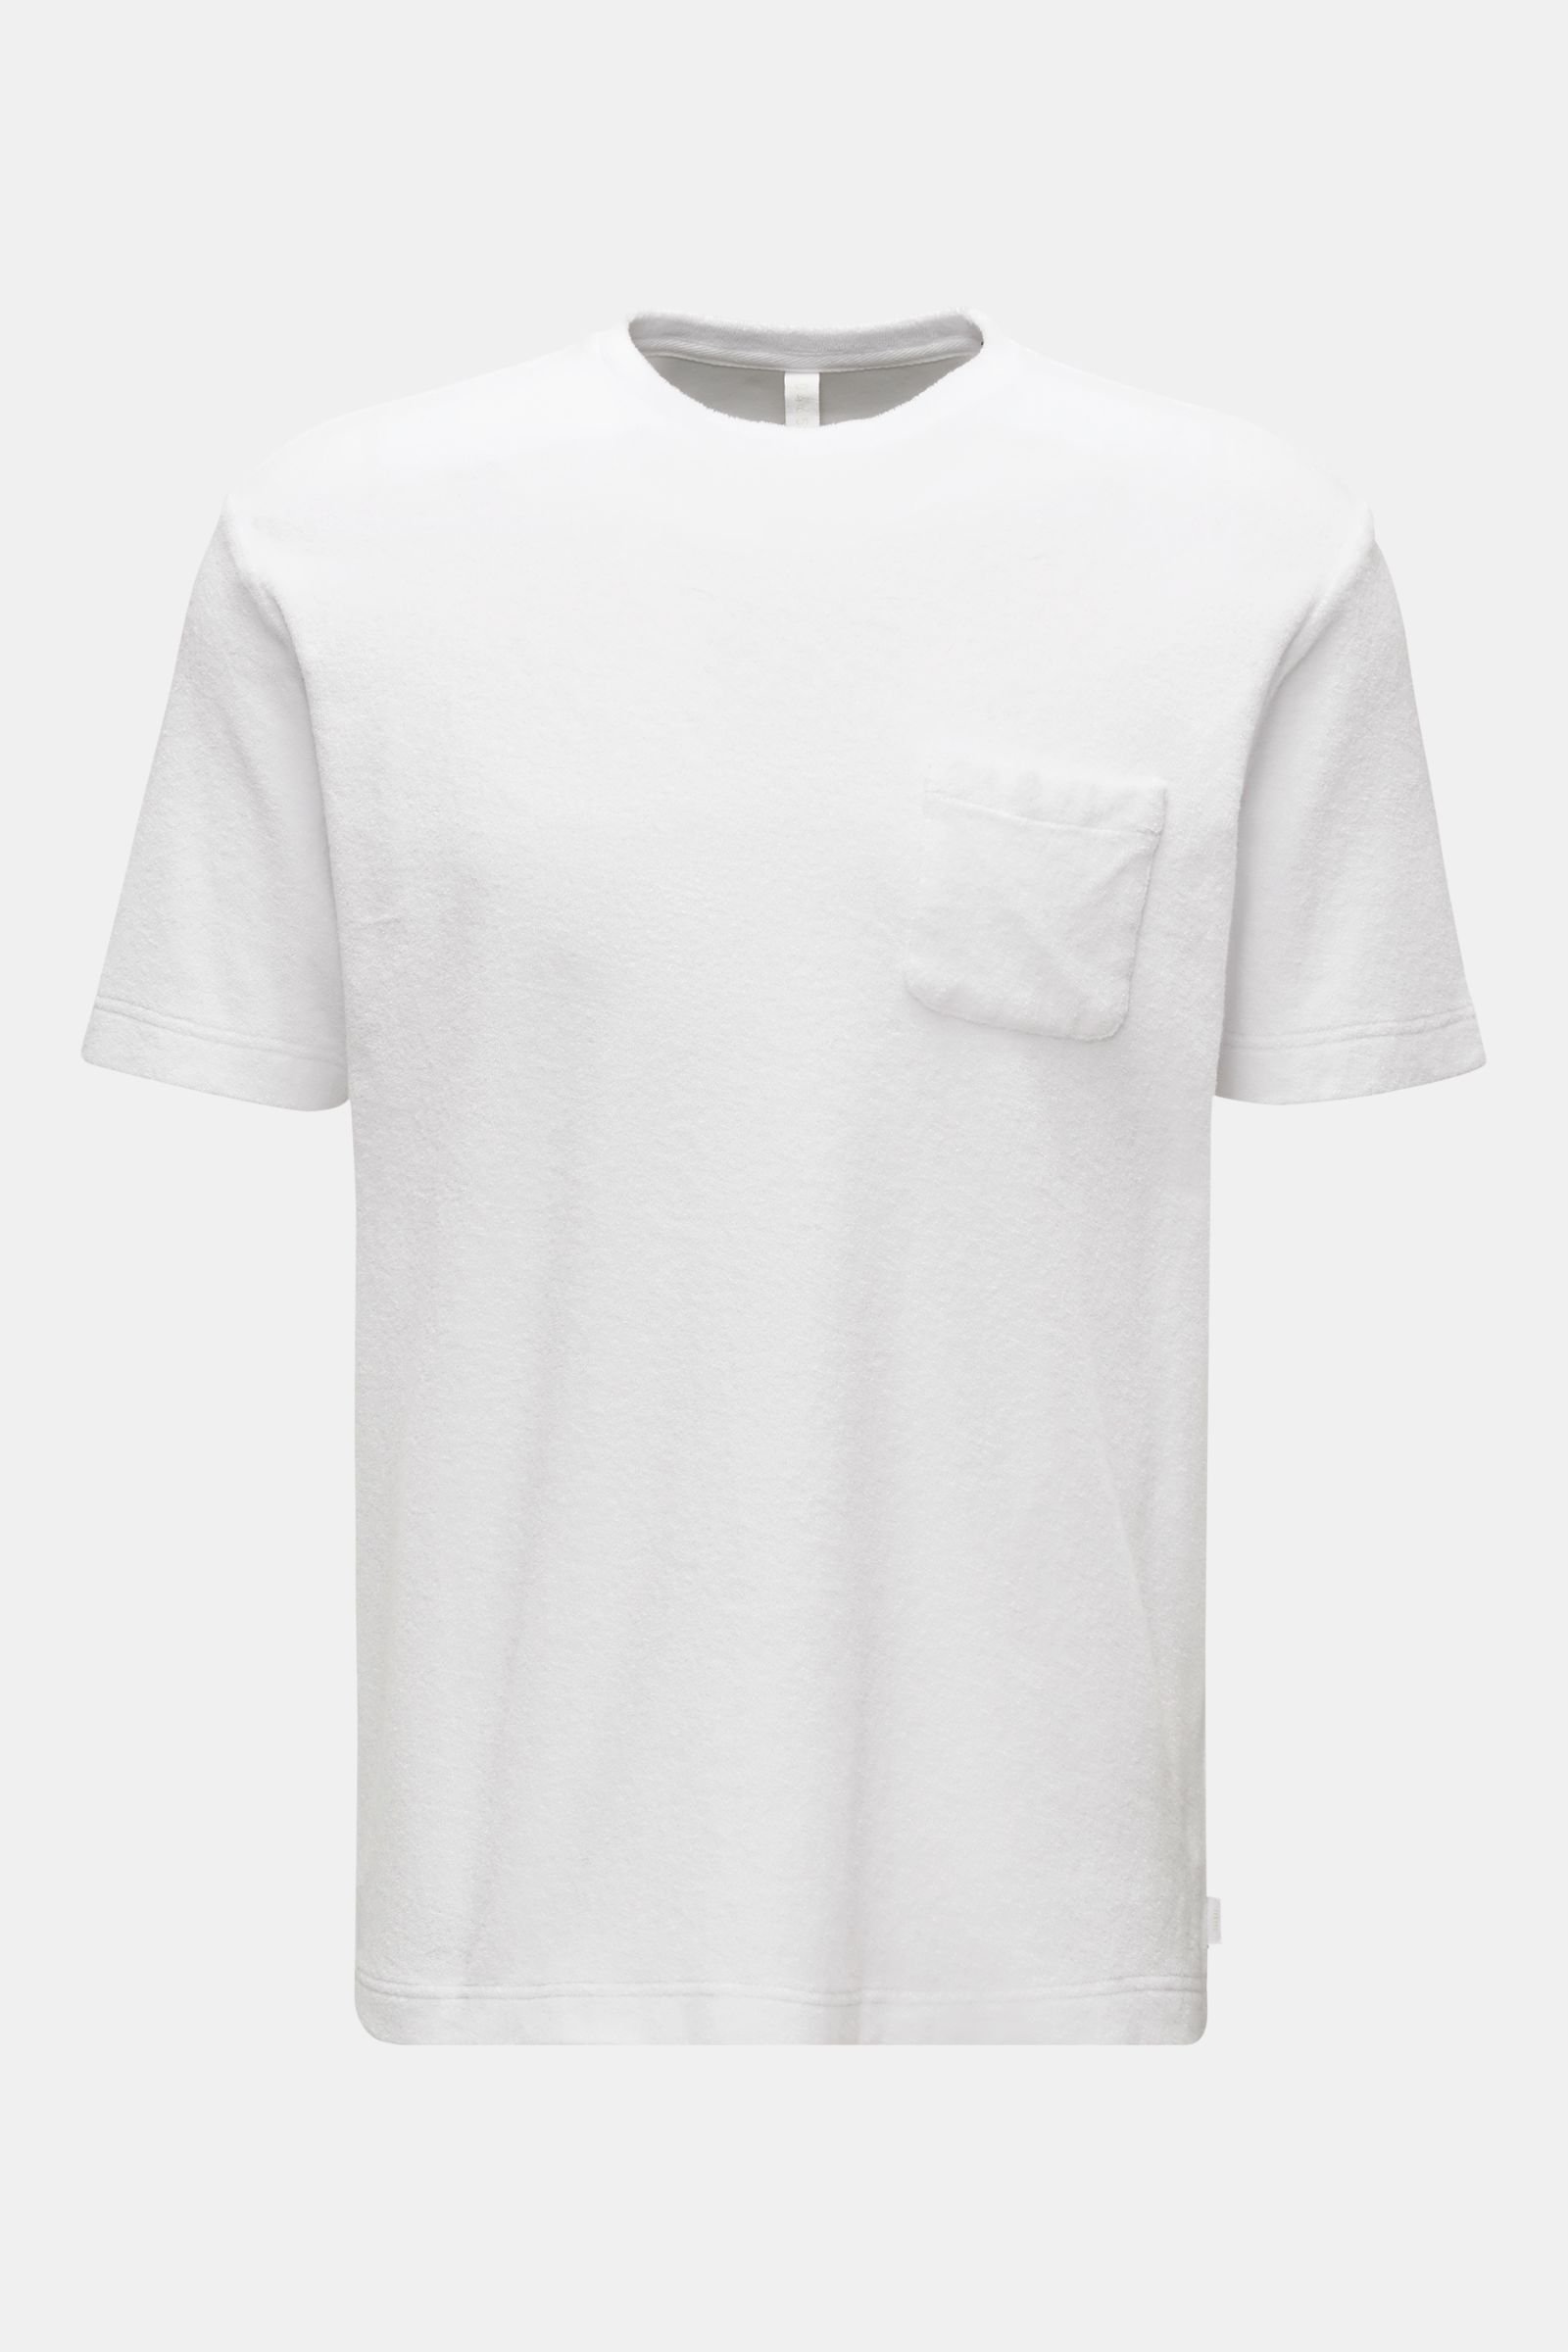 Crew neck terry T-shirt white